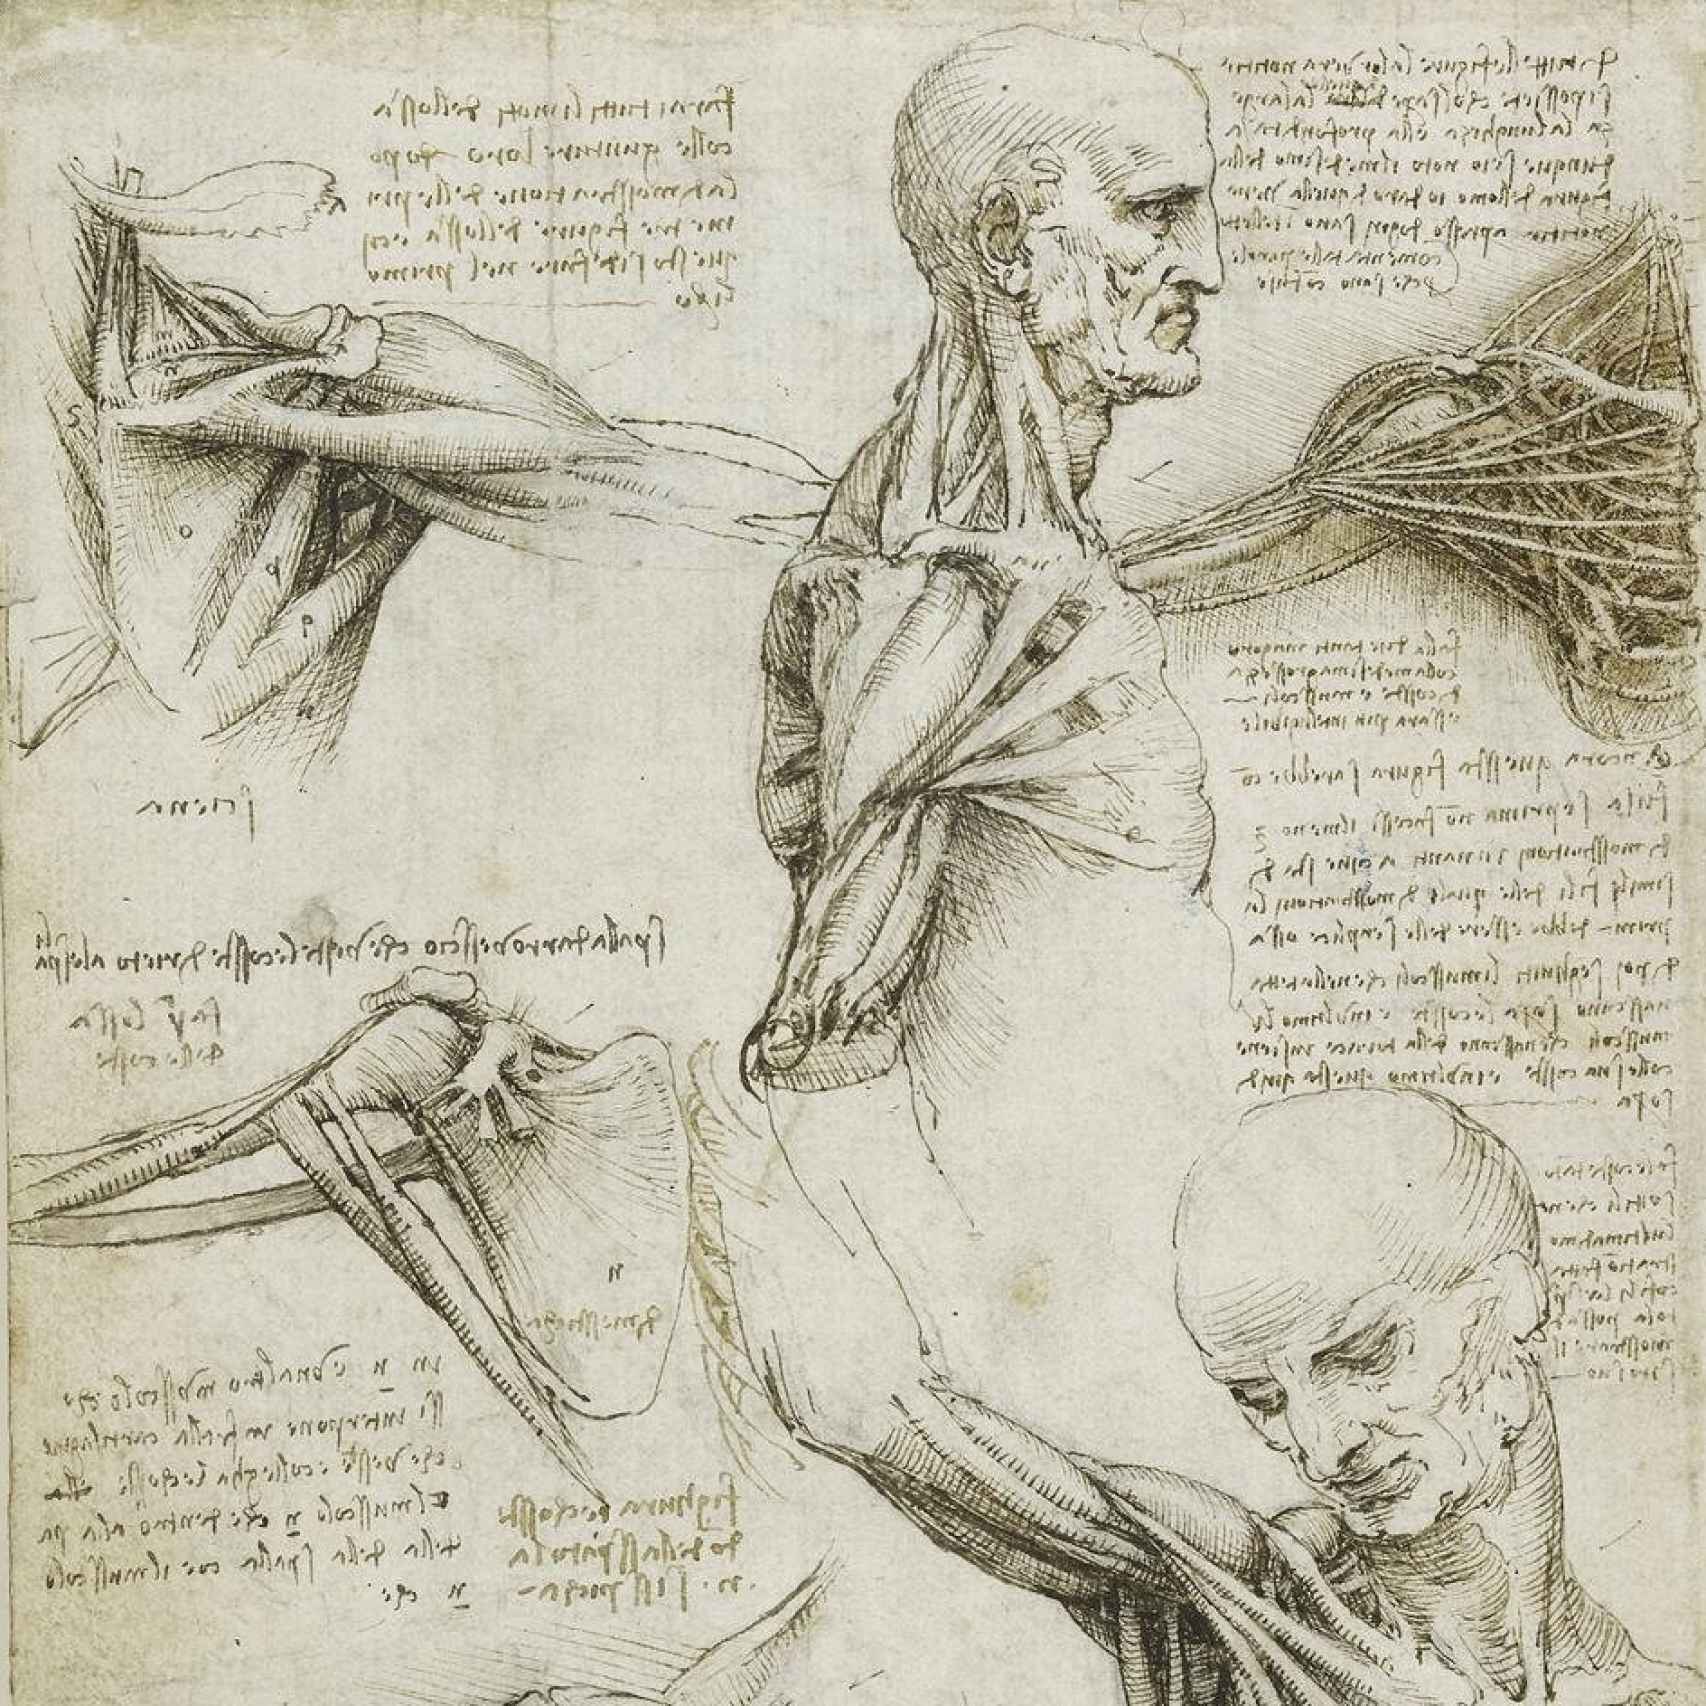 Estudio del movimiento del hombre, de Leonardo da Vinci.